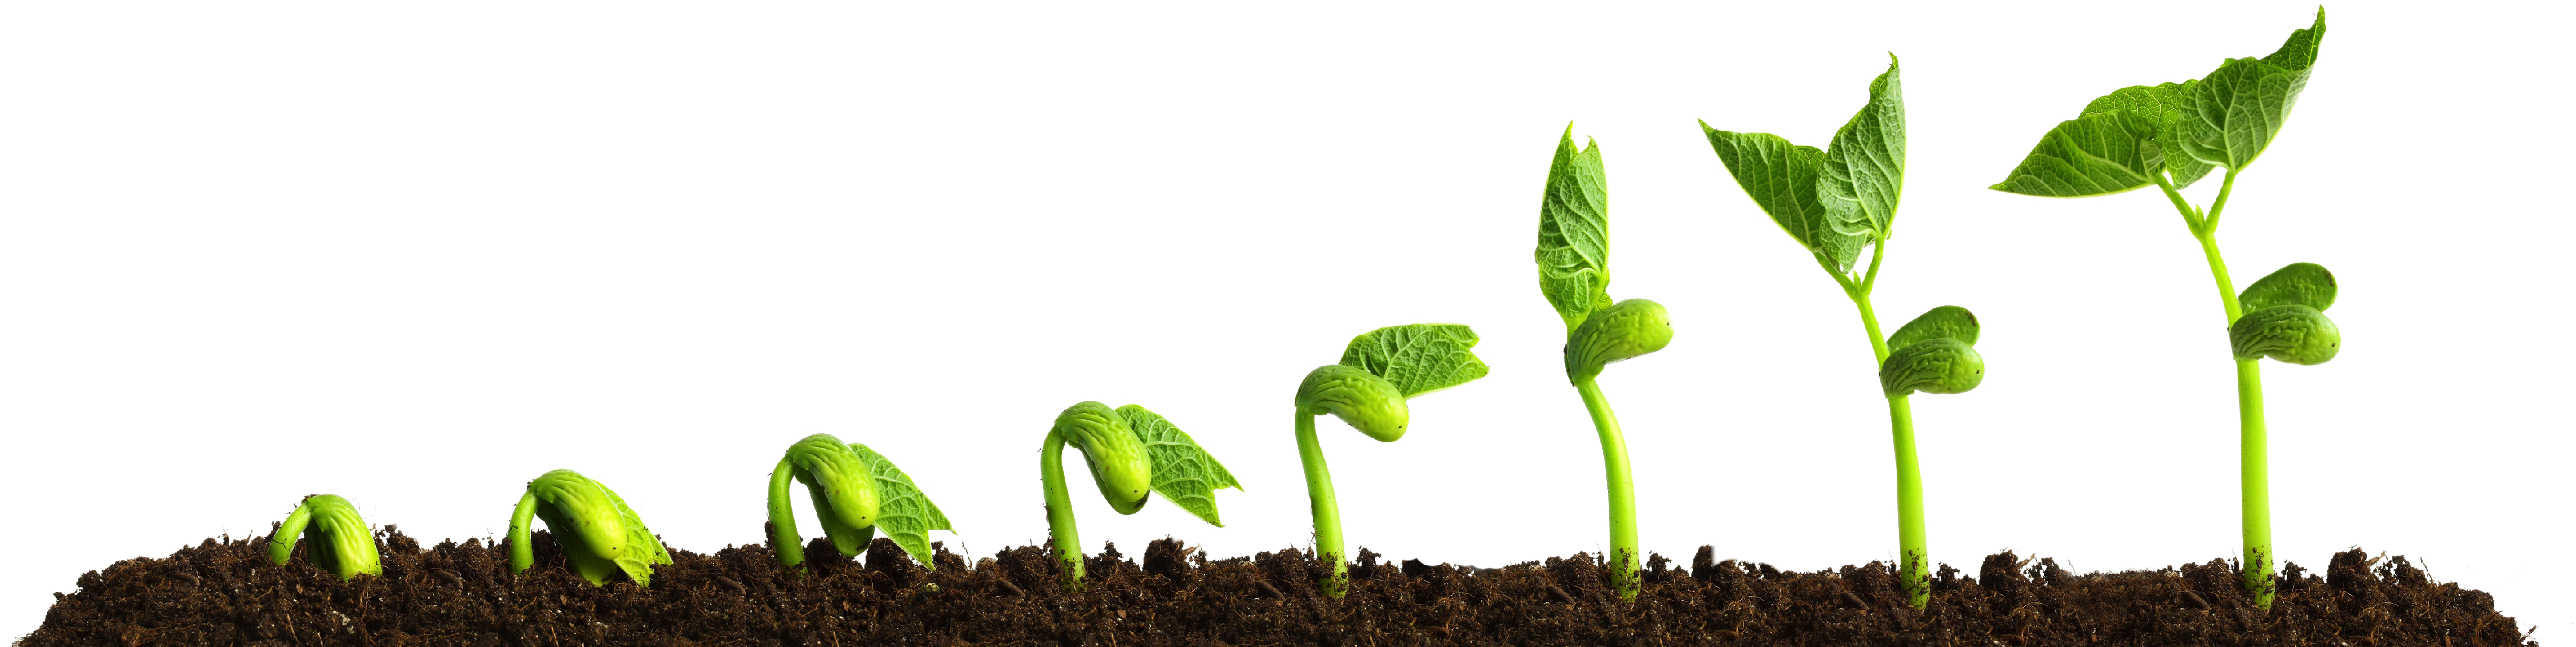 Рост движение и развитие растений. Рост растений. Стадии роста растений. Этапы роста травы. Росток растения.